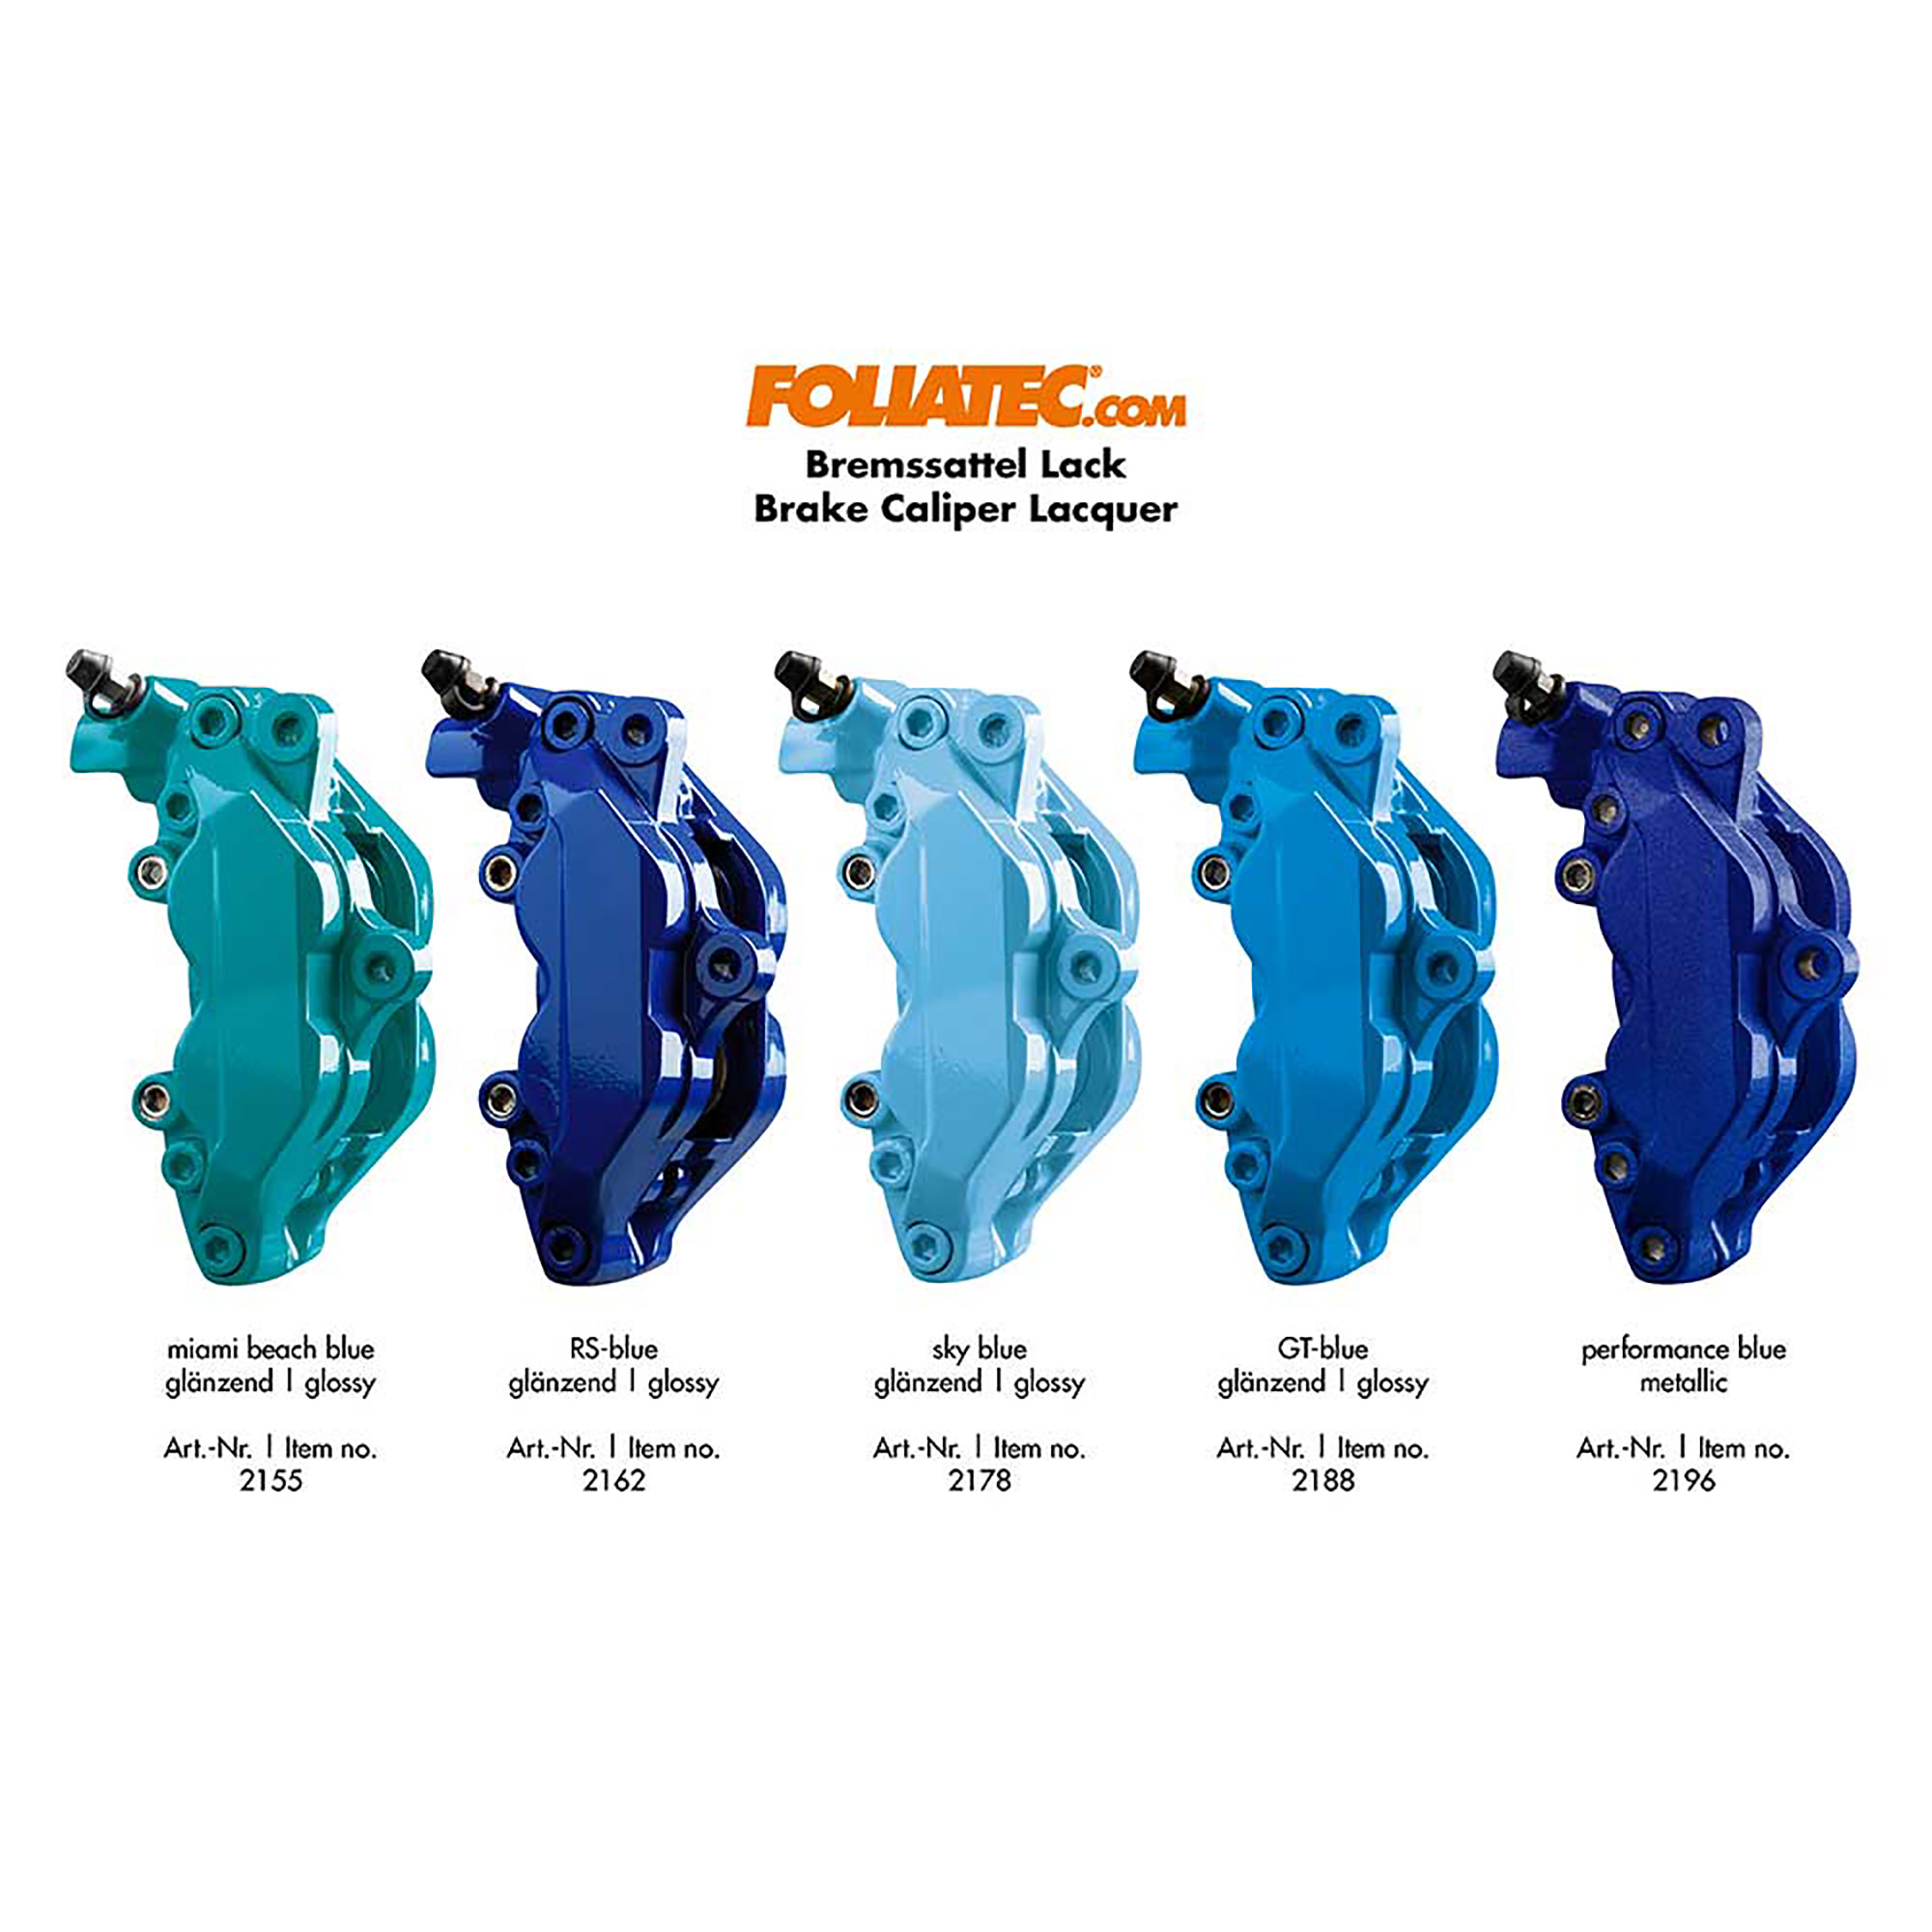 Краска для тормозных суппортов. Краска для суппортов Foliatec Performance Blue. Foliatec 2196. Foliatec Performance Blue Metallic. Foliatec RS Blue.